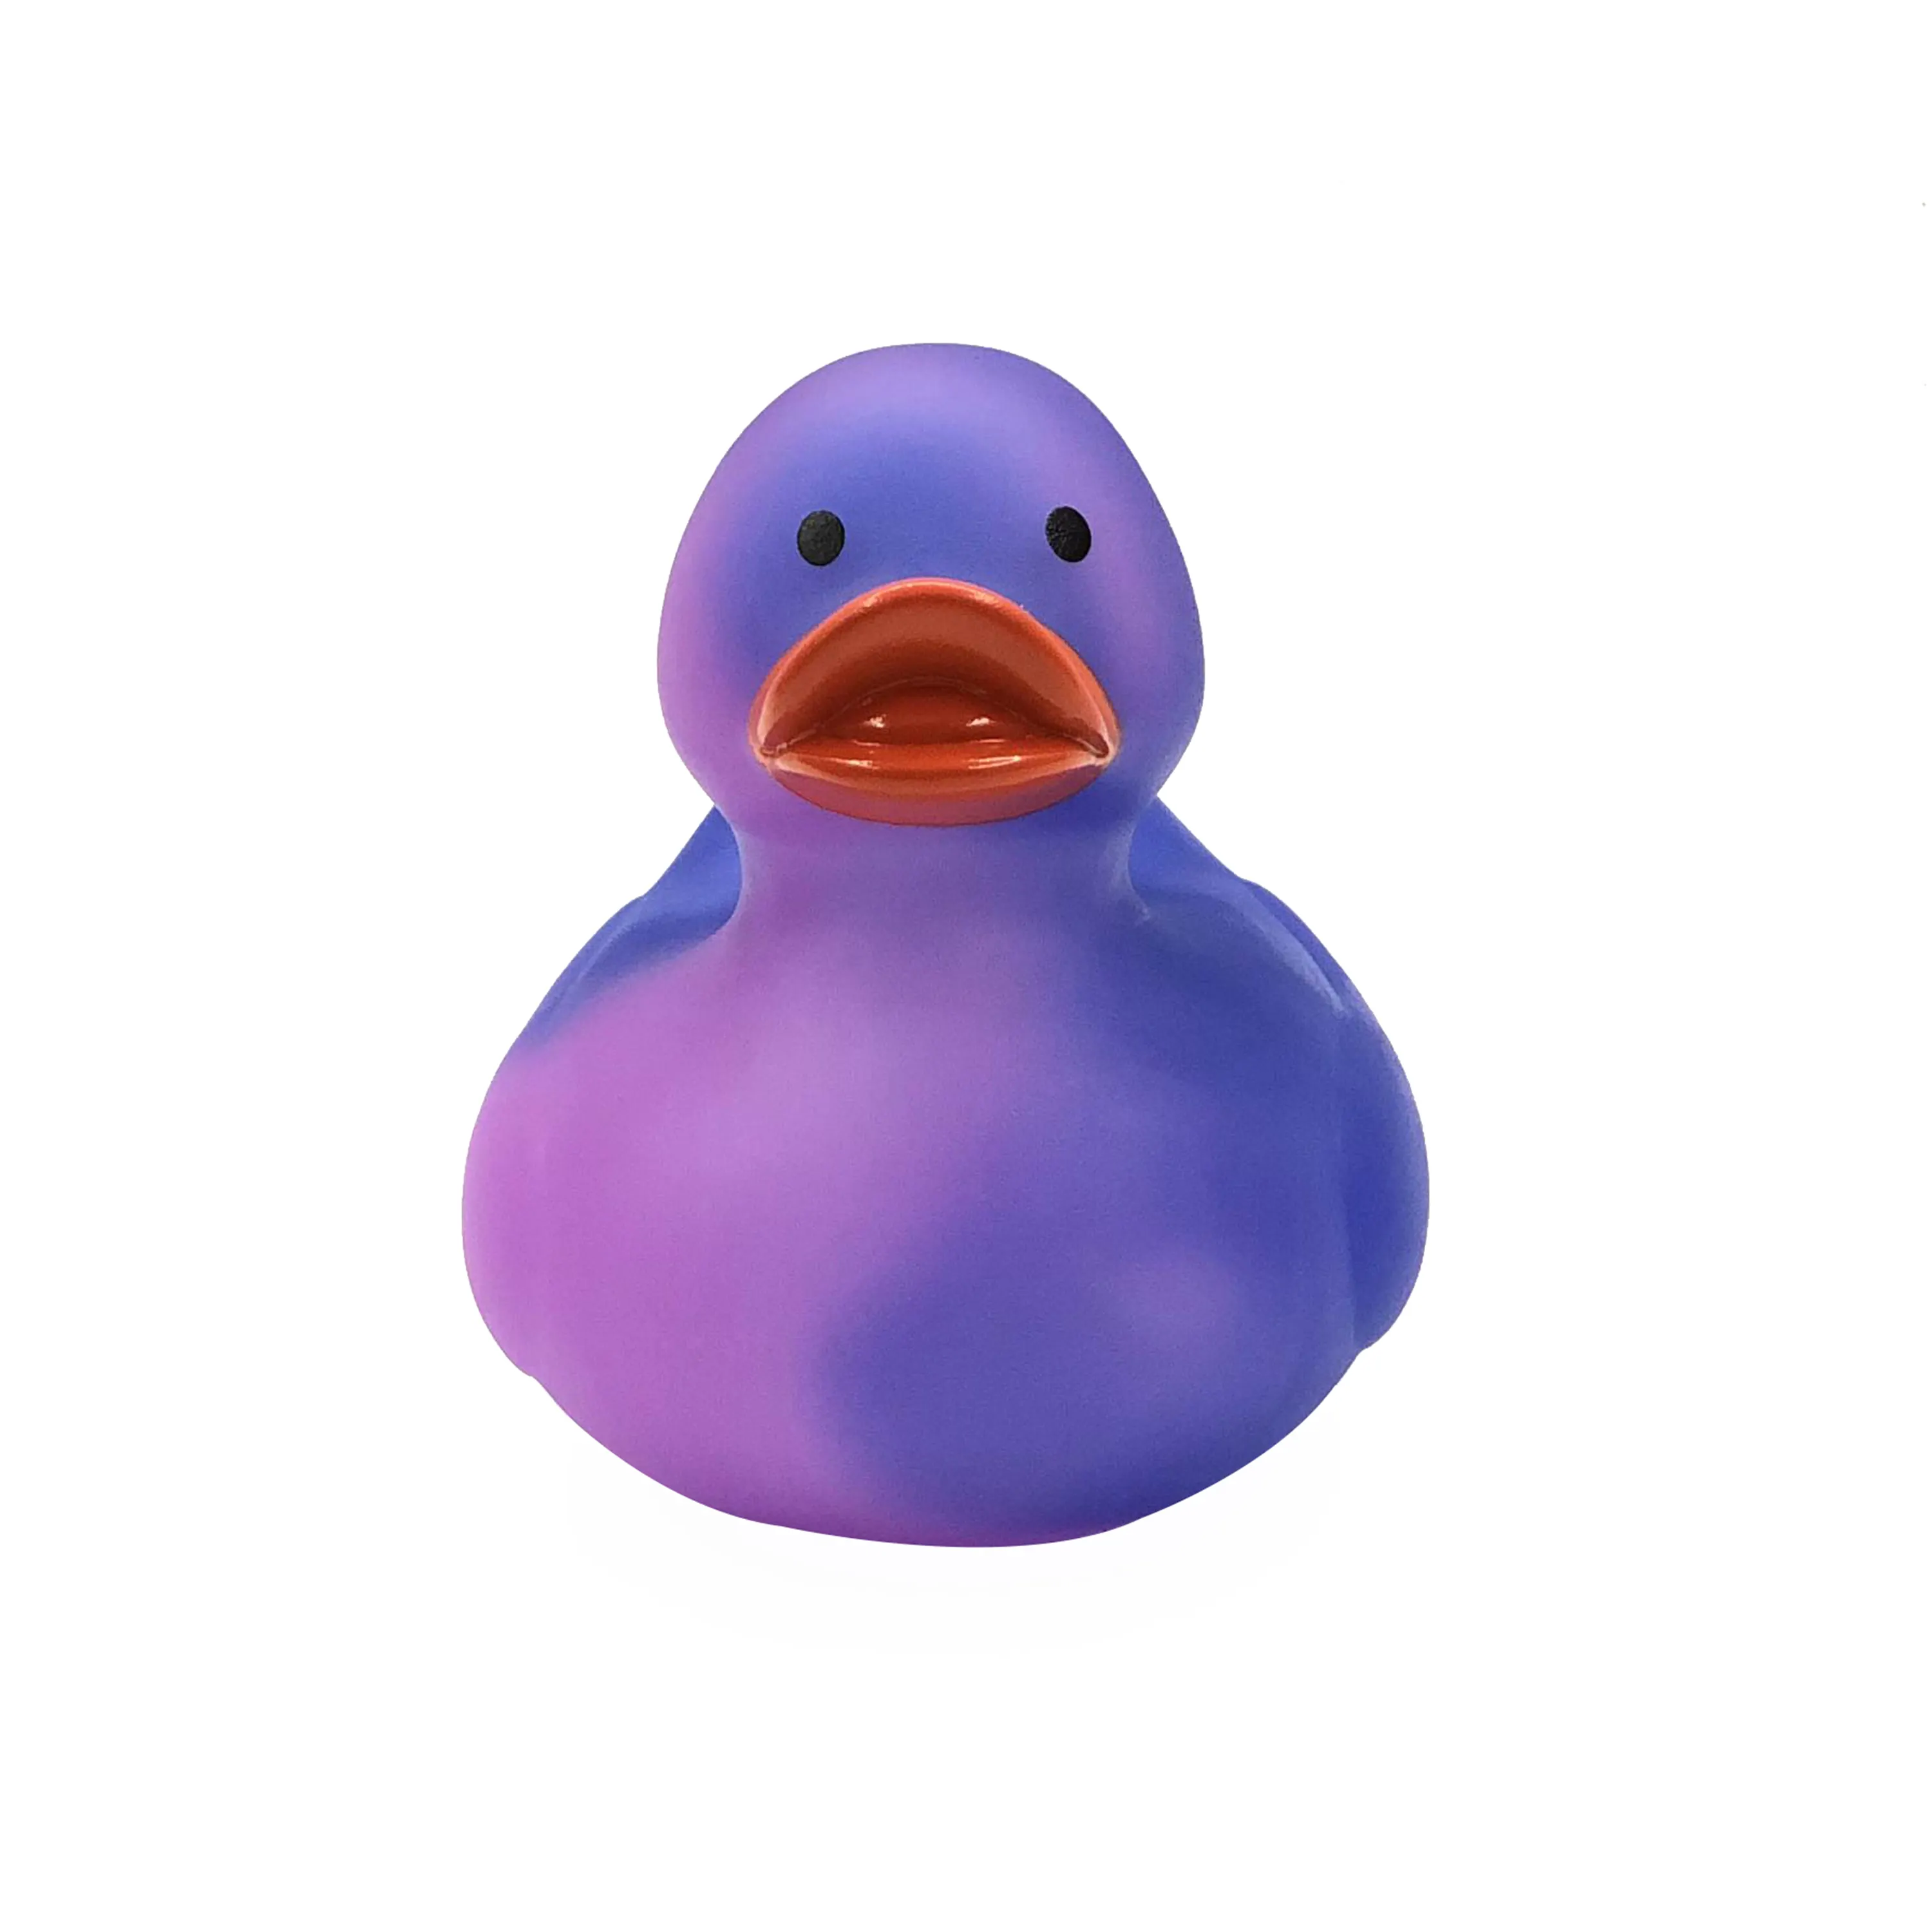 Umwelt freundliches PVC 31 Grad Temperatur Design Ihre eigene Farbänderung Bad Ente schwimmende Vinyl Gummi Ente